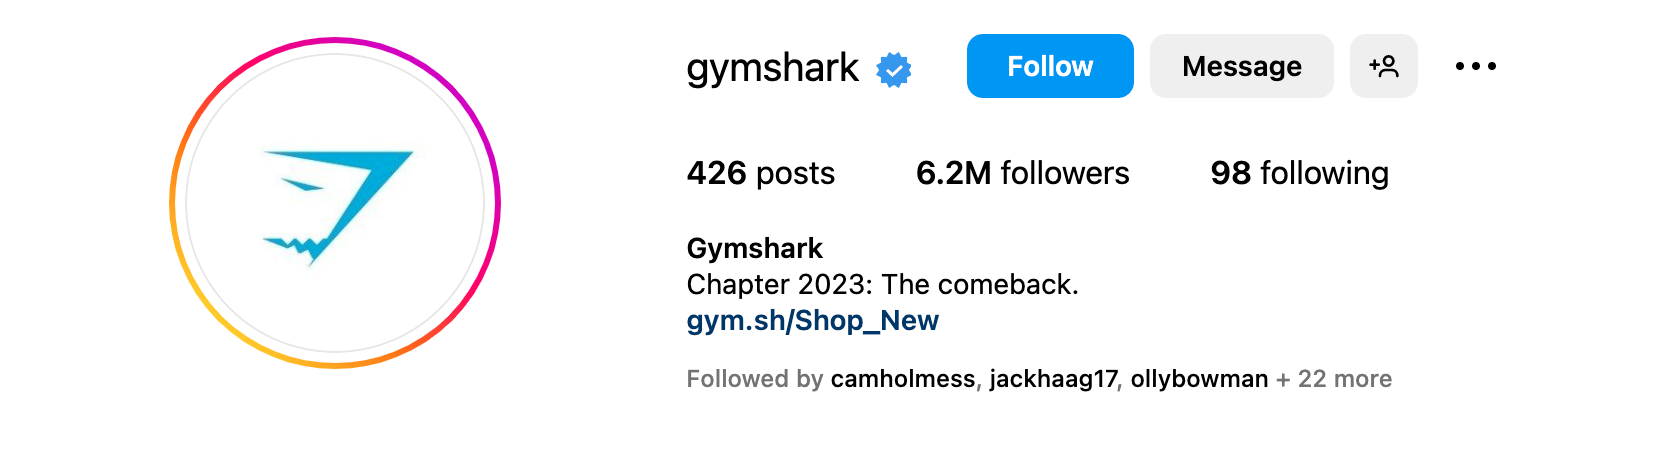 Instagram bio ideas - Gymshark